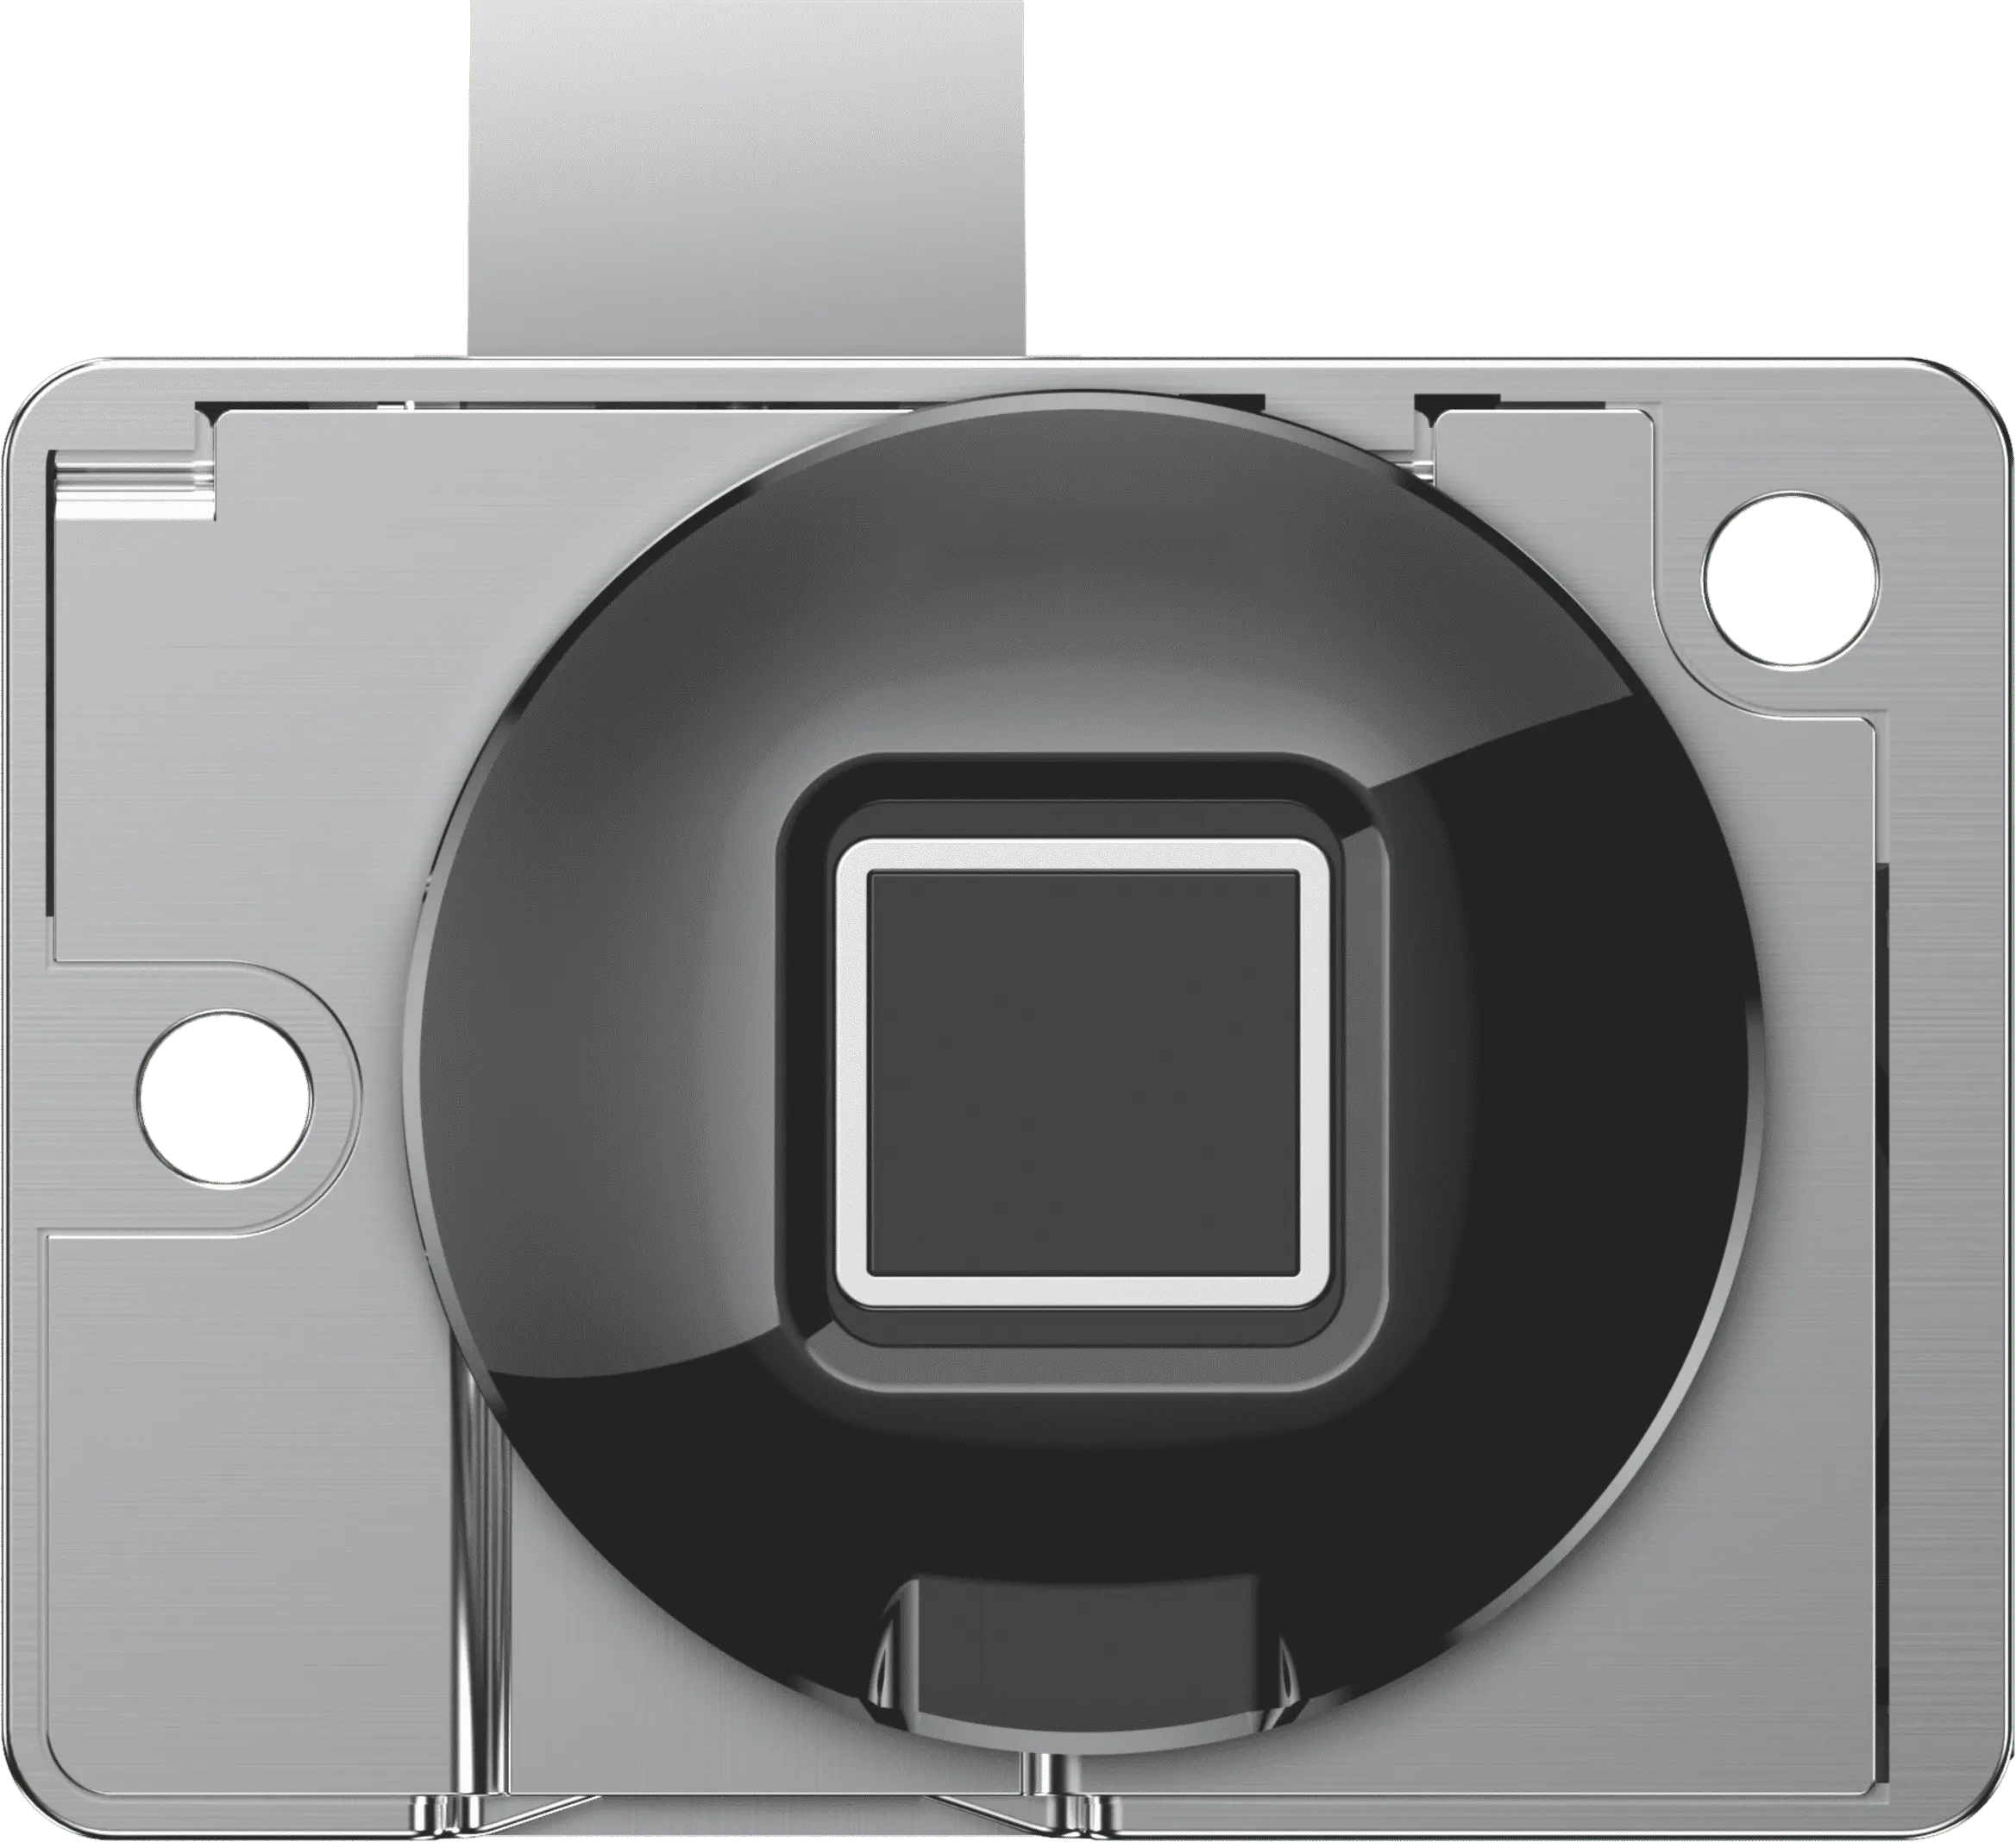 Lucchetto intelligente per cassetto intelligente USB moderno e minimalista Smart lock micro smart lock